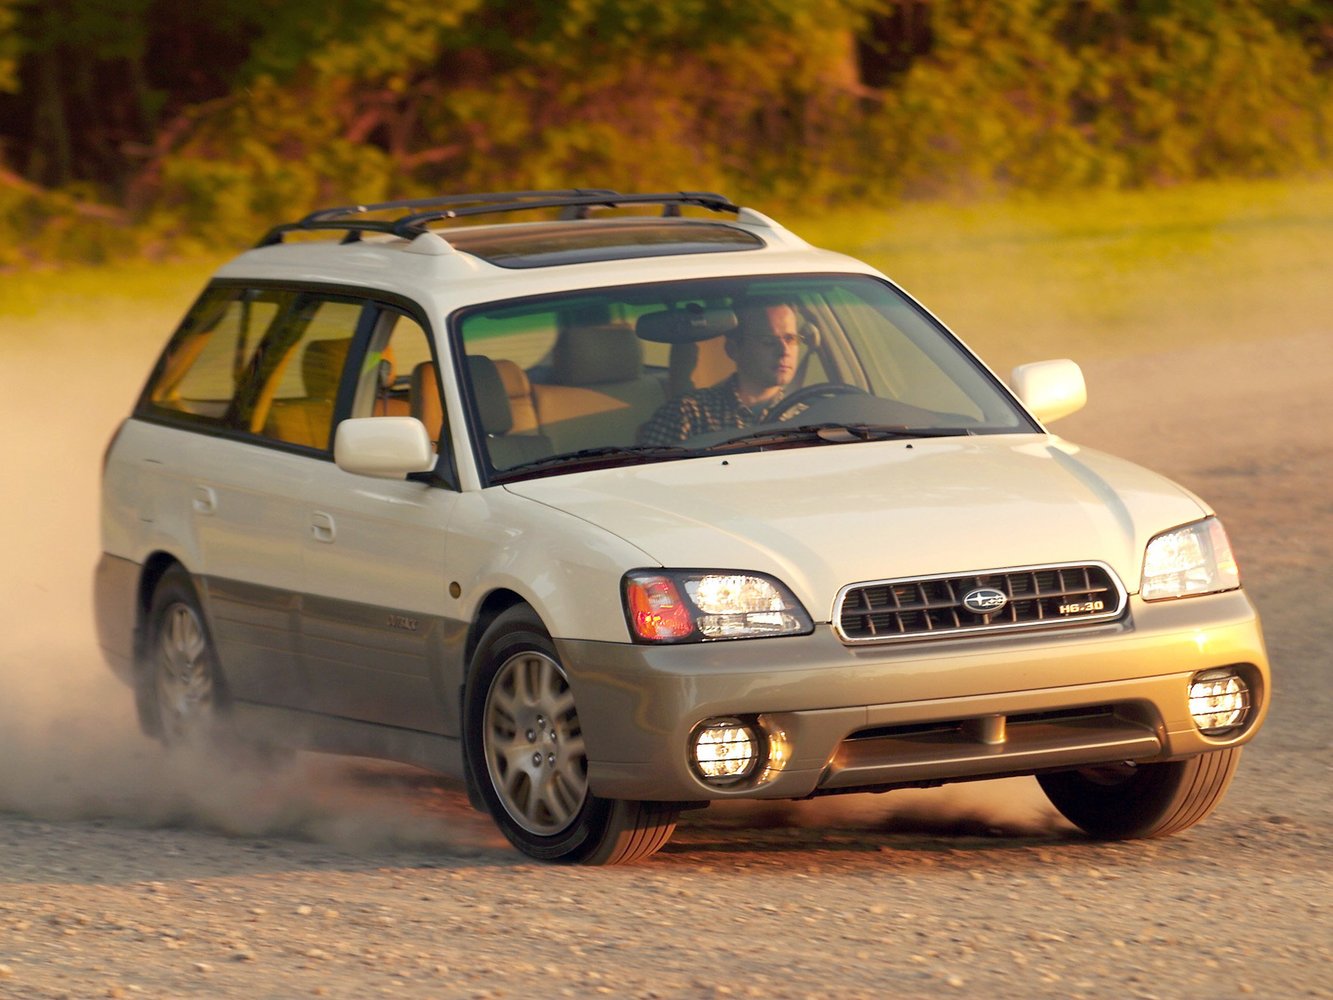 Subaru Outback 1998 - 2003